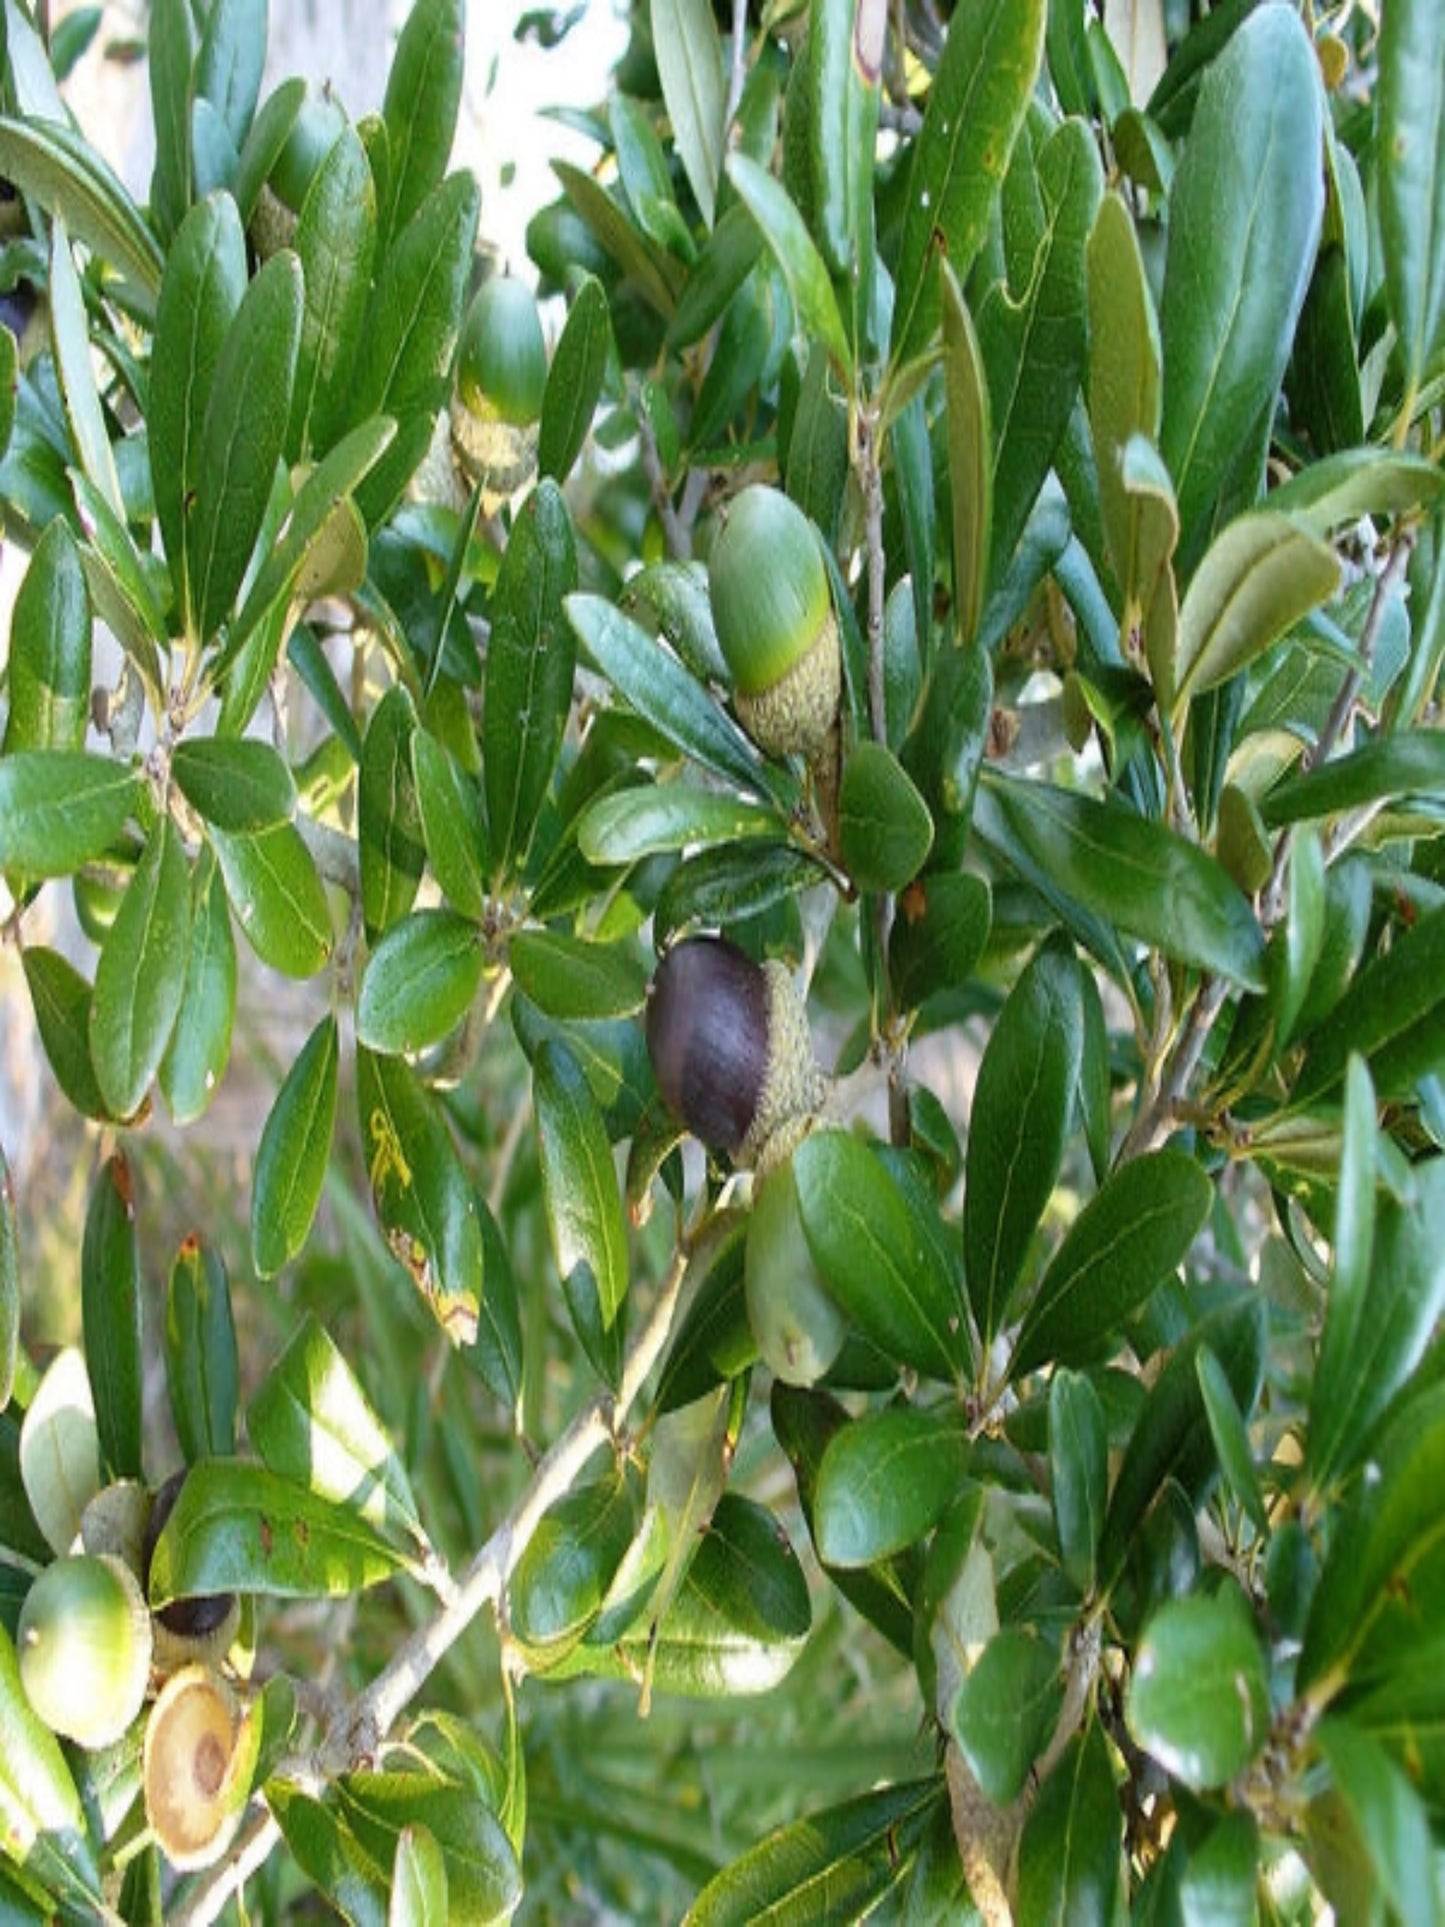 Quercus virginia "live oak" is host tree for skipper butterflies